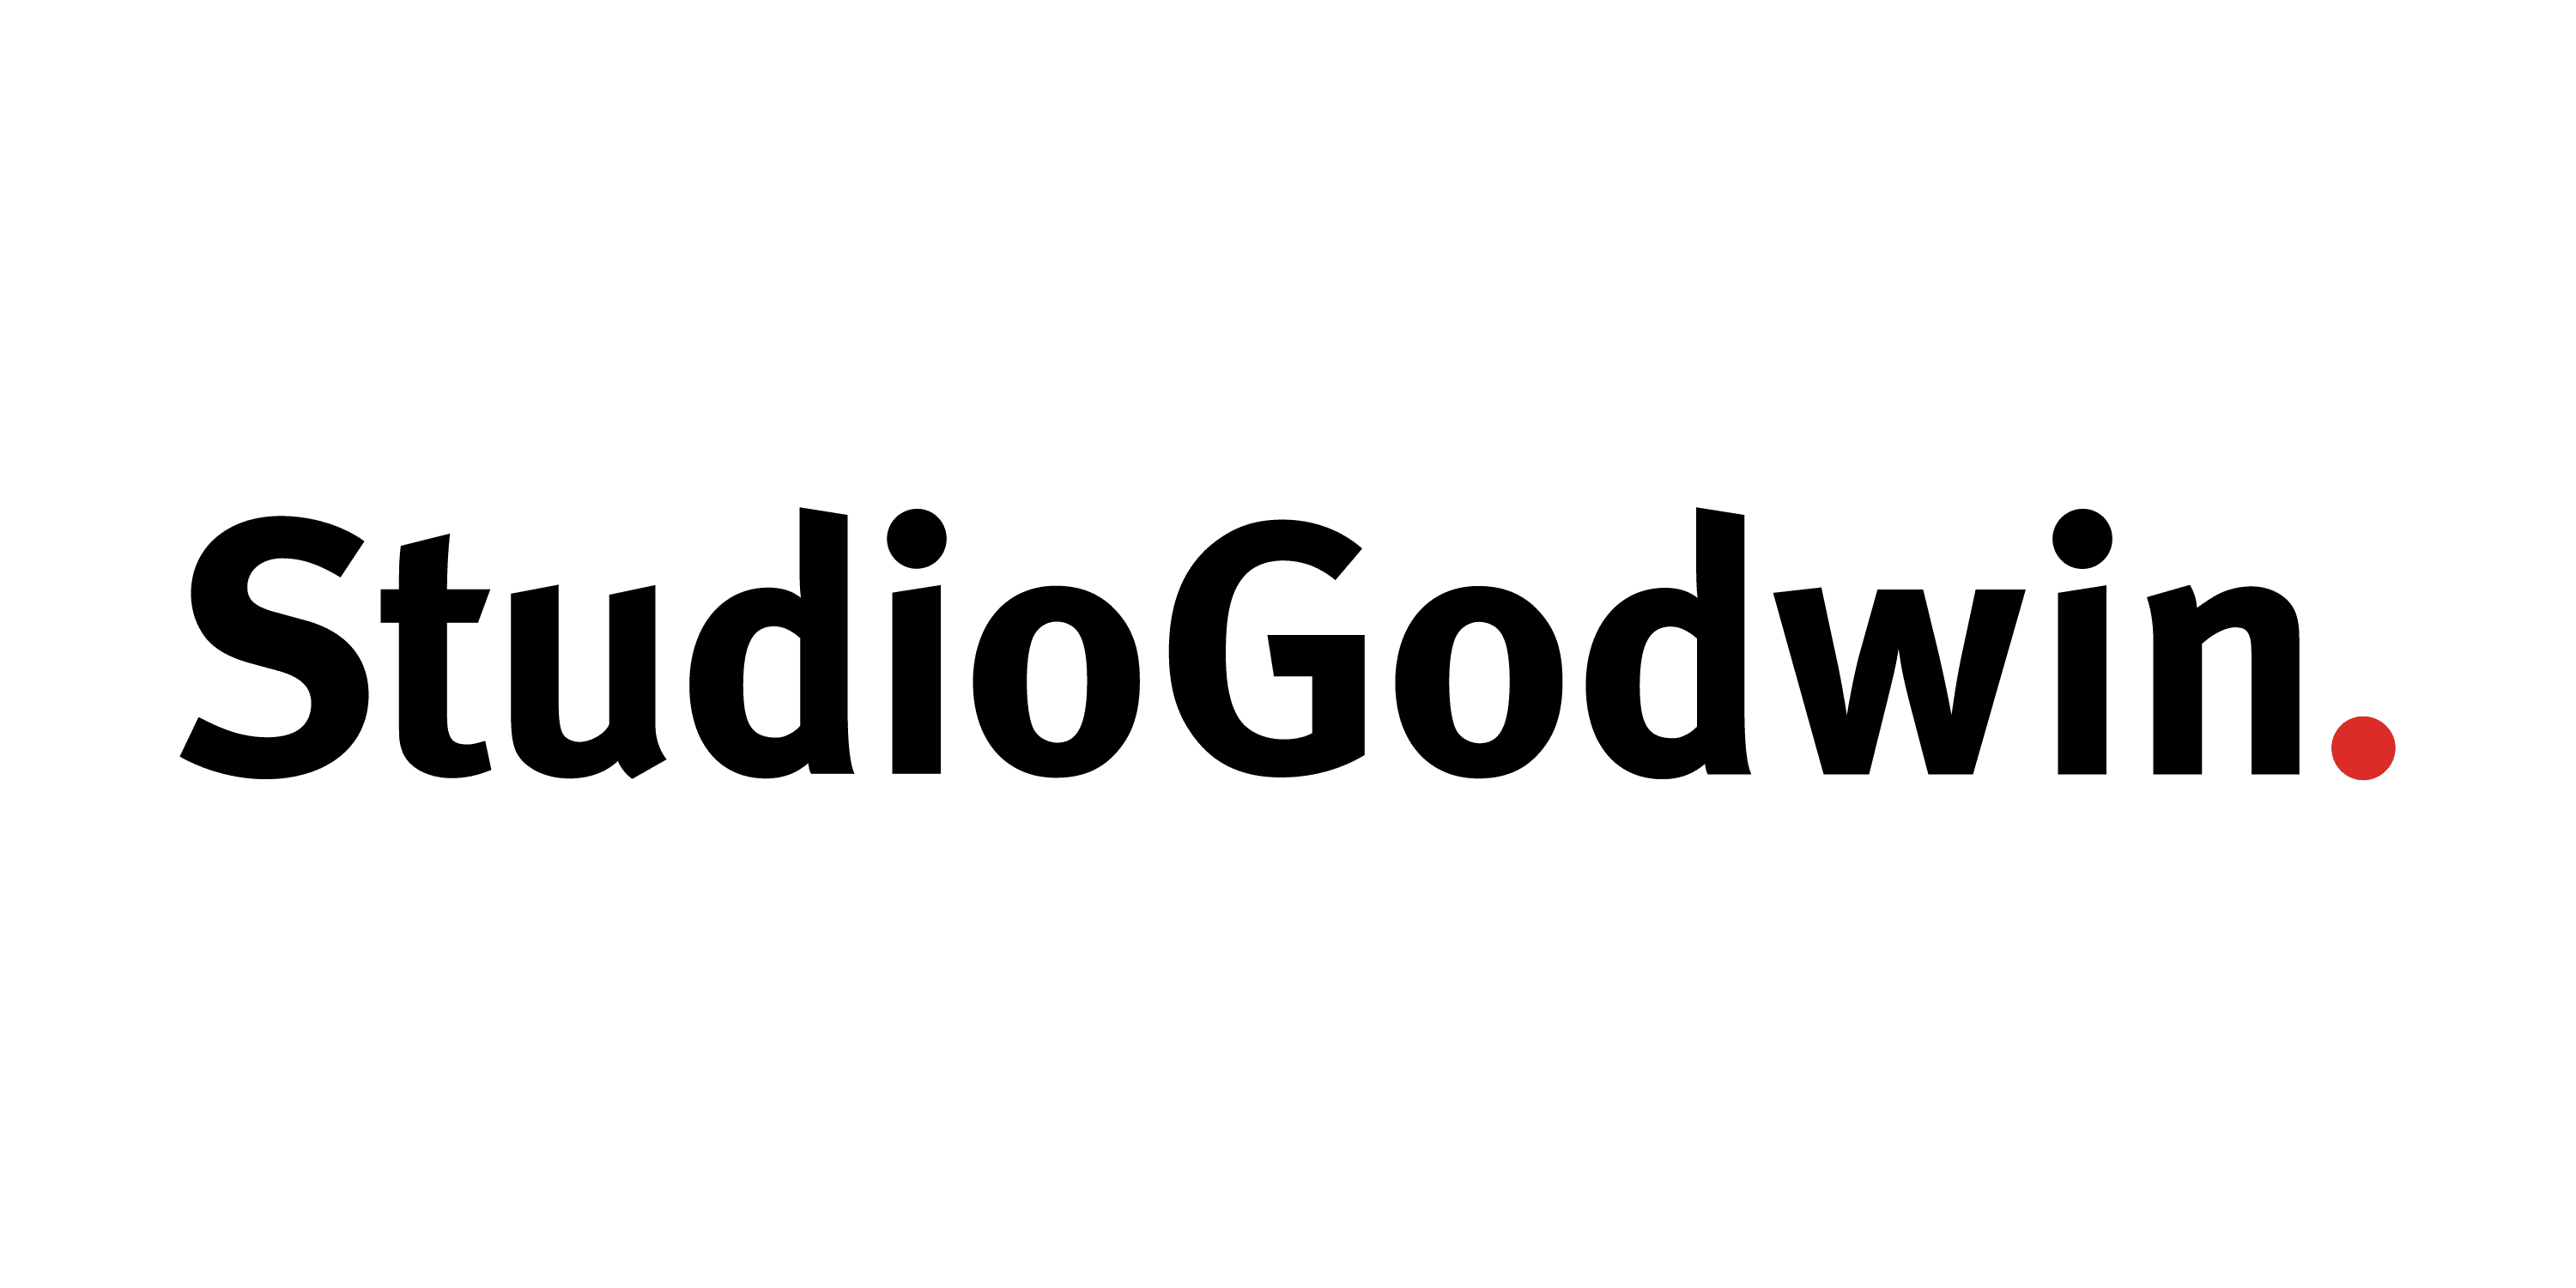 StudioGodwin_Godwin_Logo-02